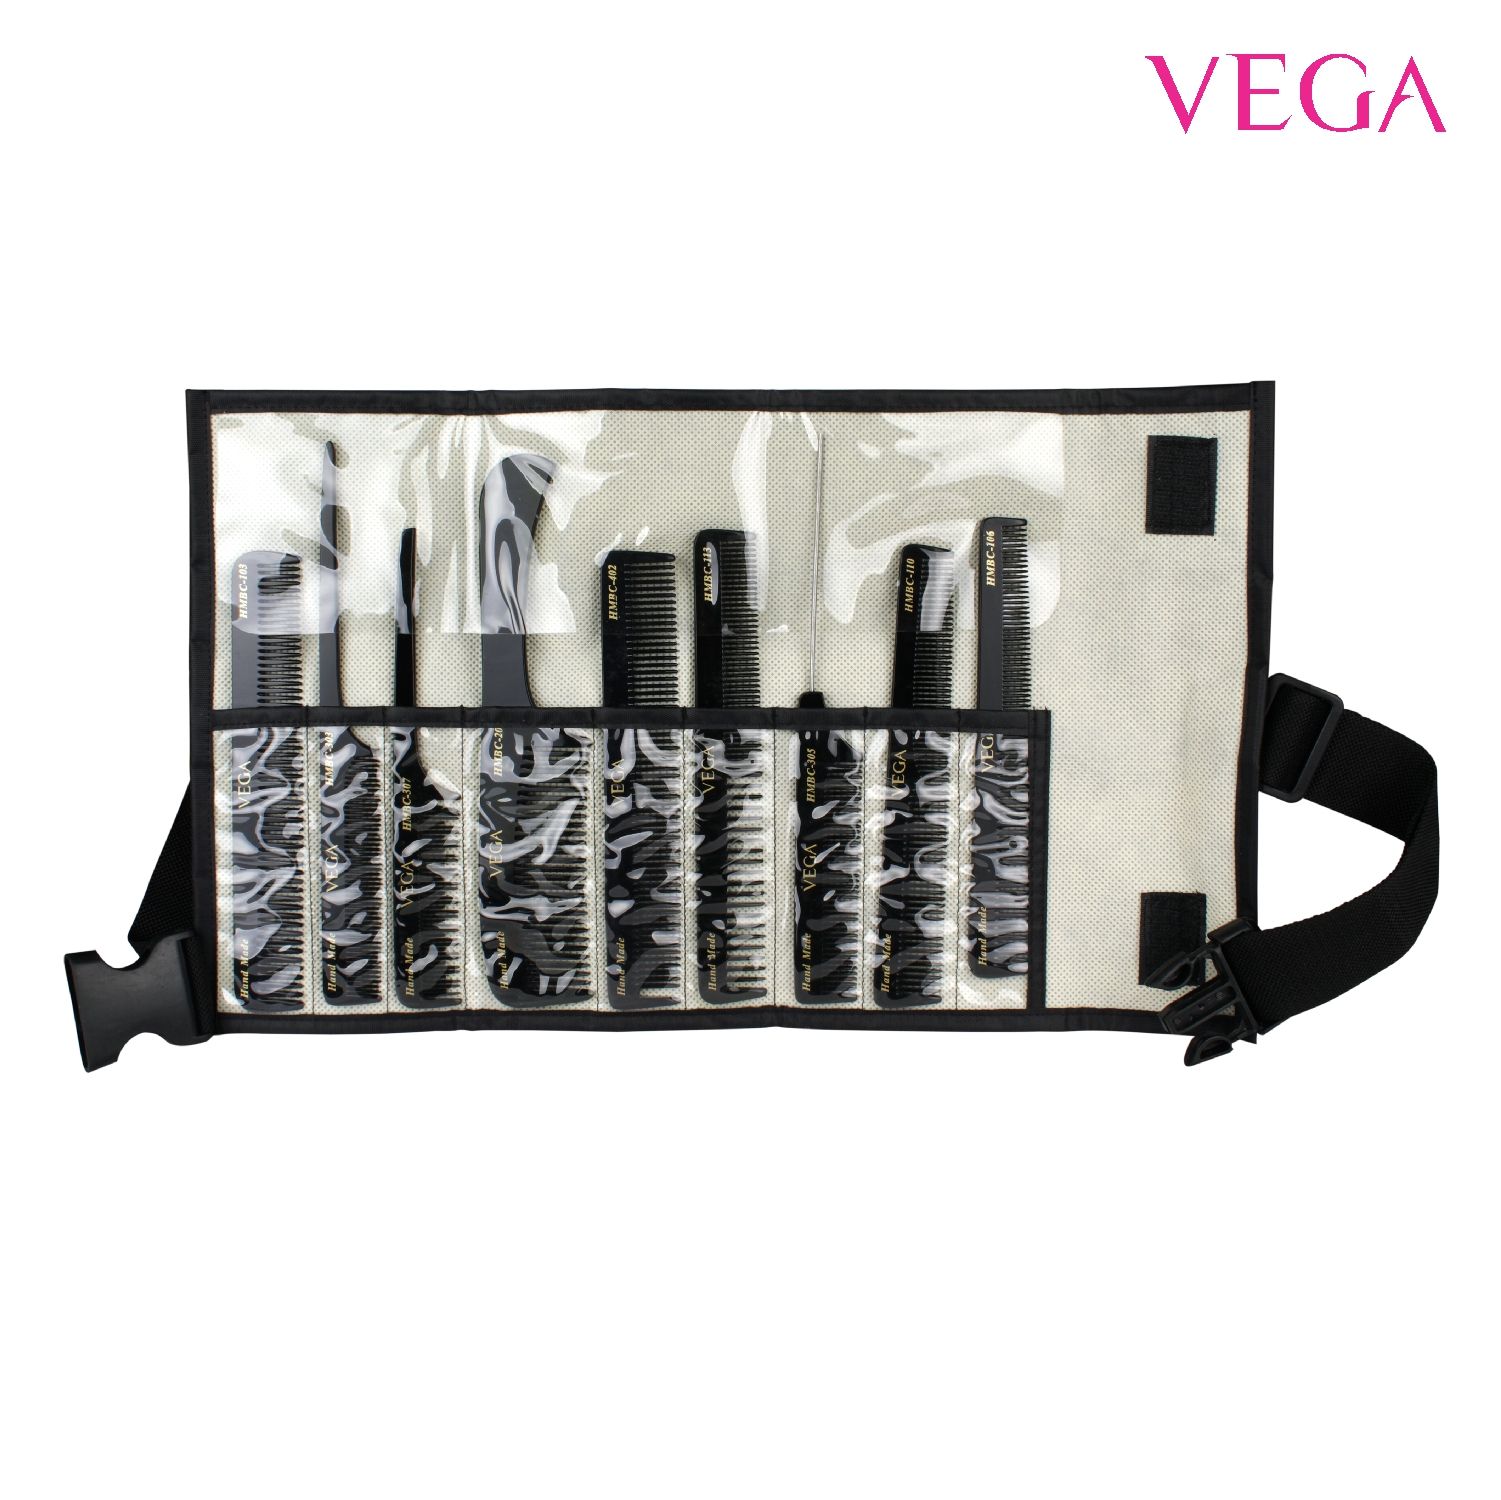 VEGA HMBCS-01 Set Of 9 Professional Combs